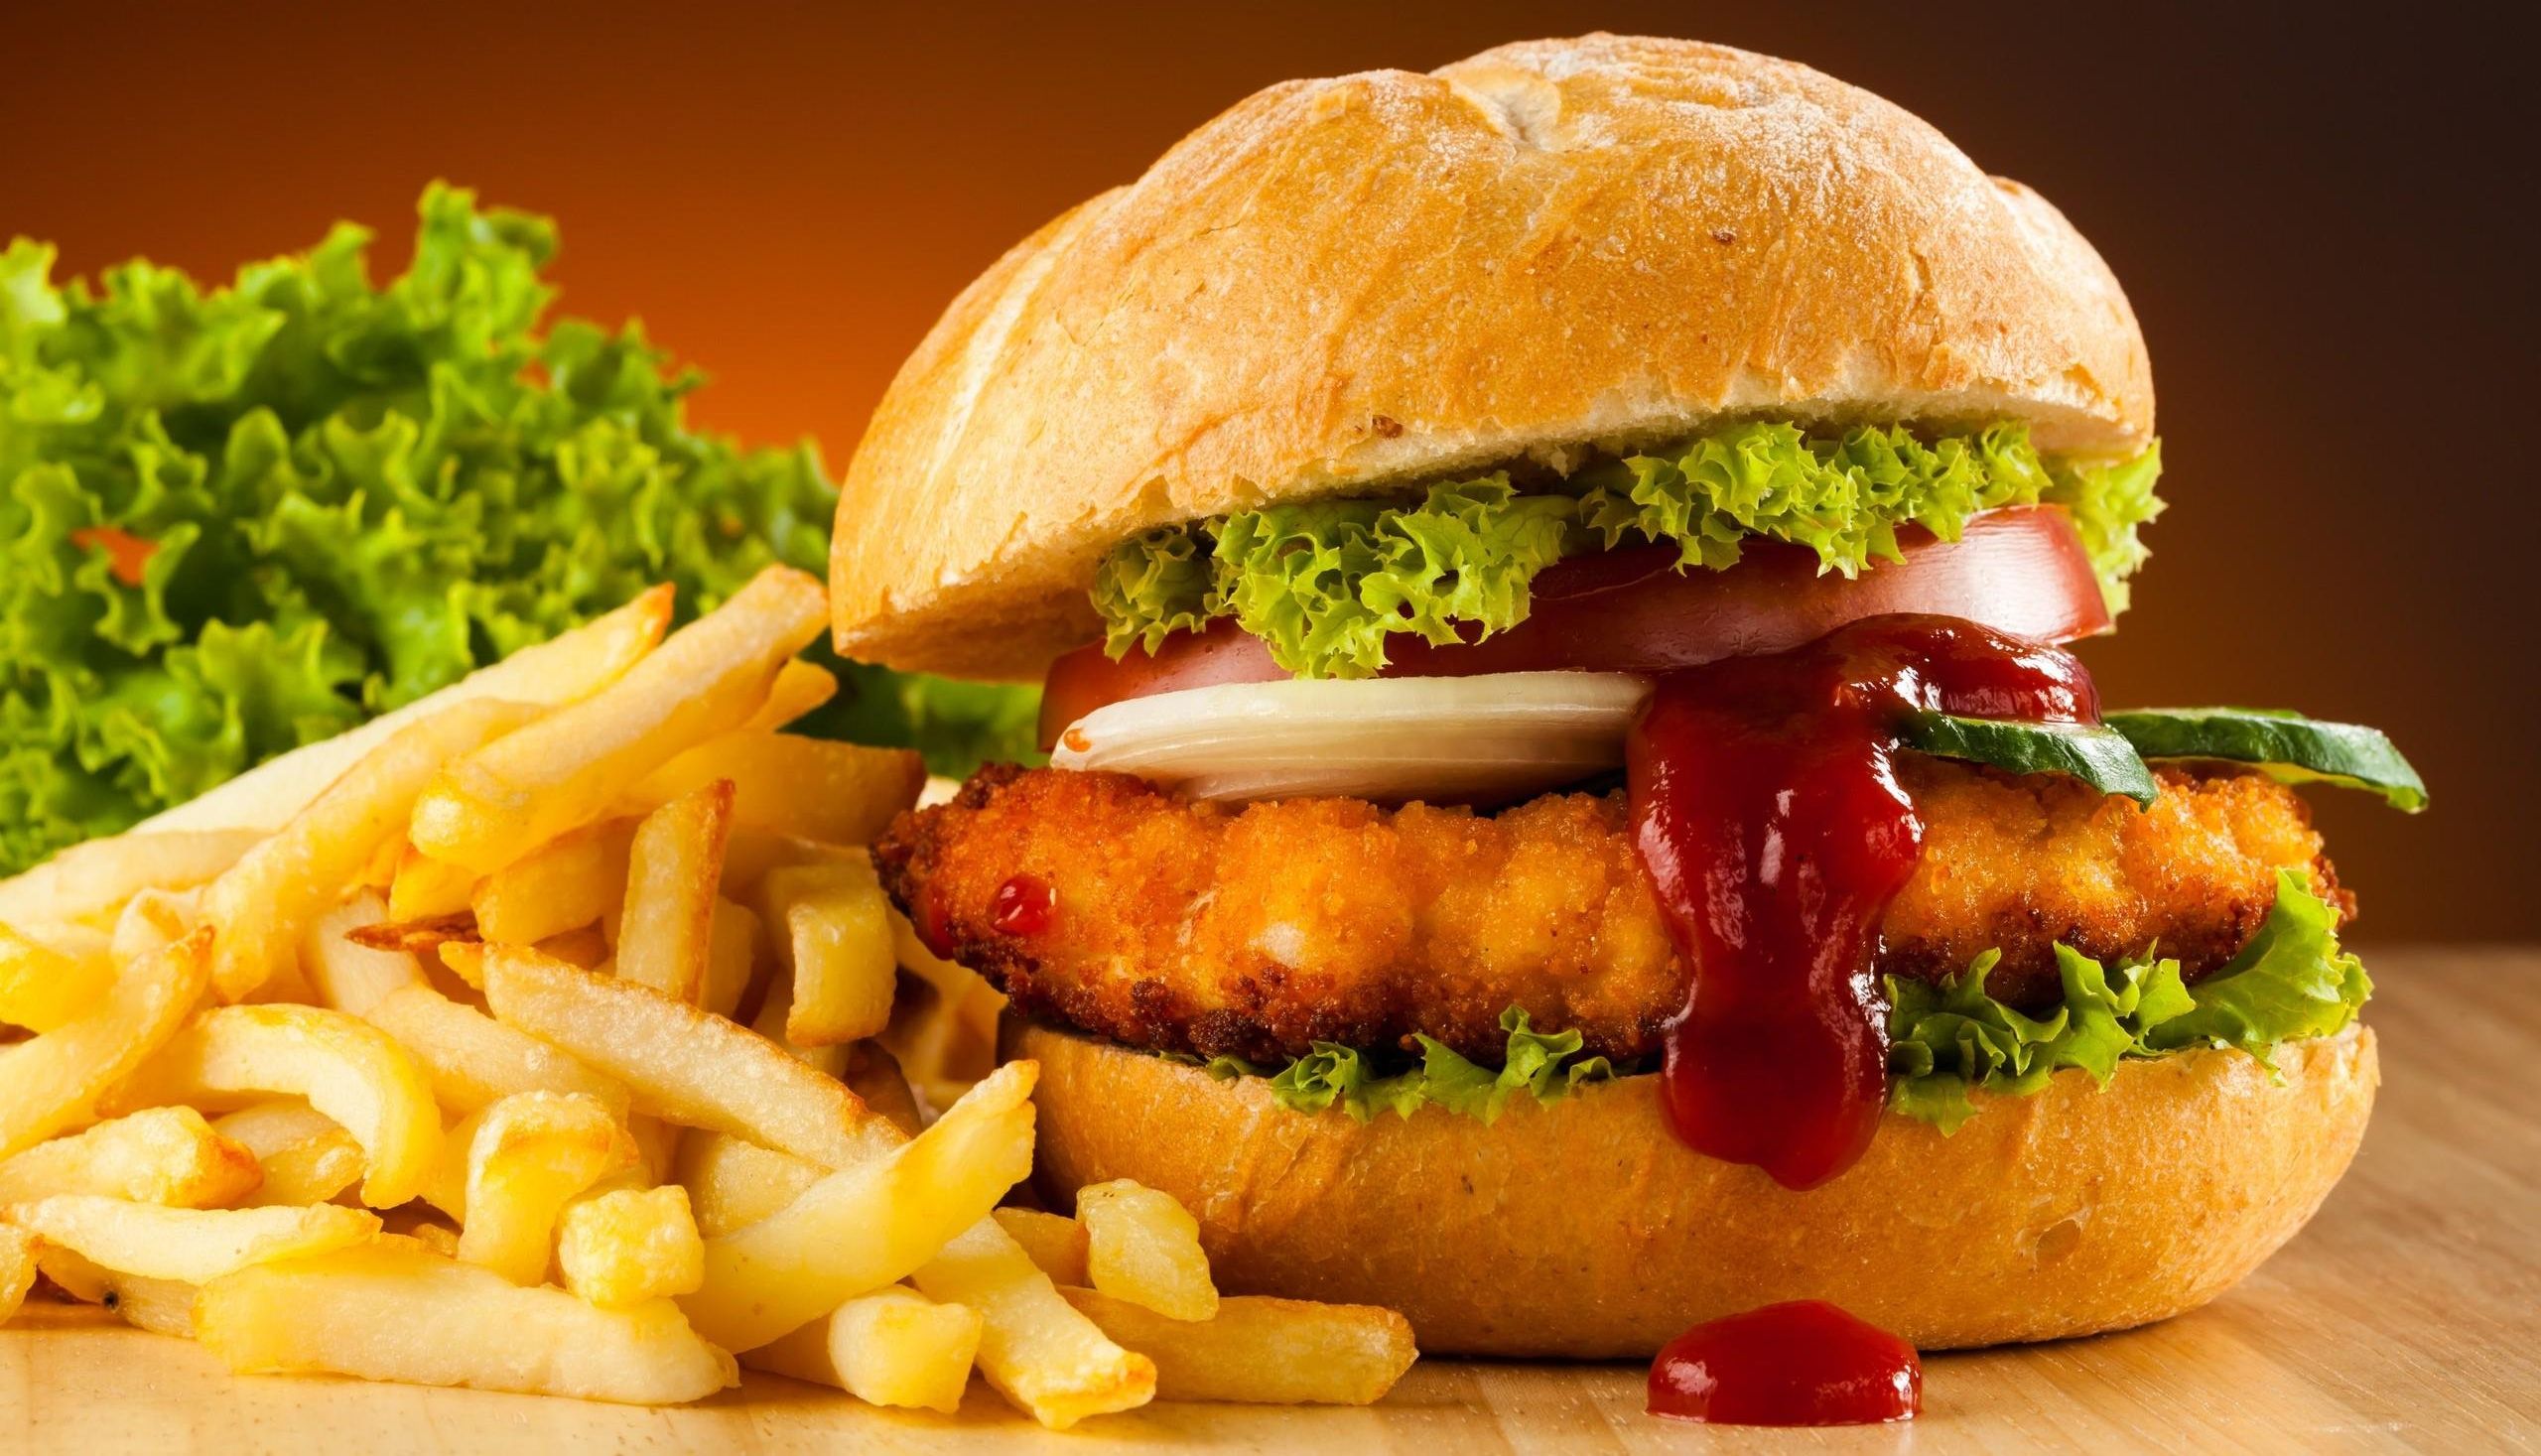 Os cientistas descobriram que os fast-food afeta o corpo como uma infecção